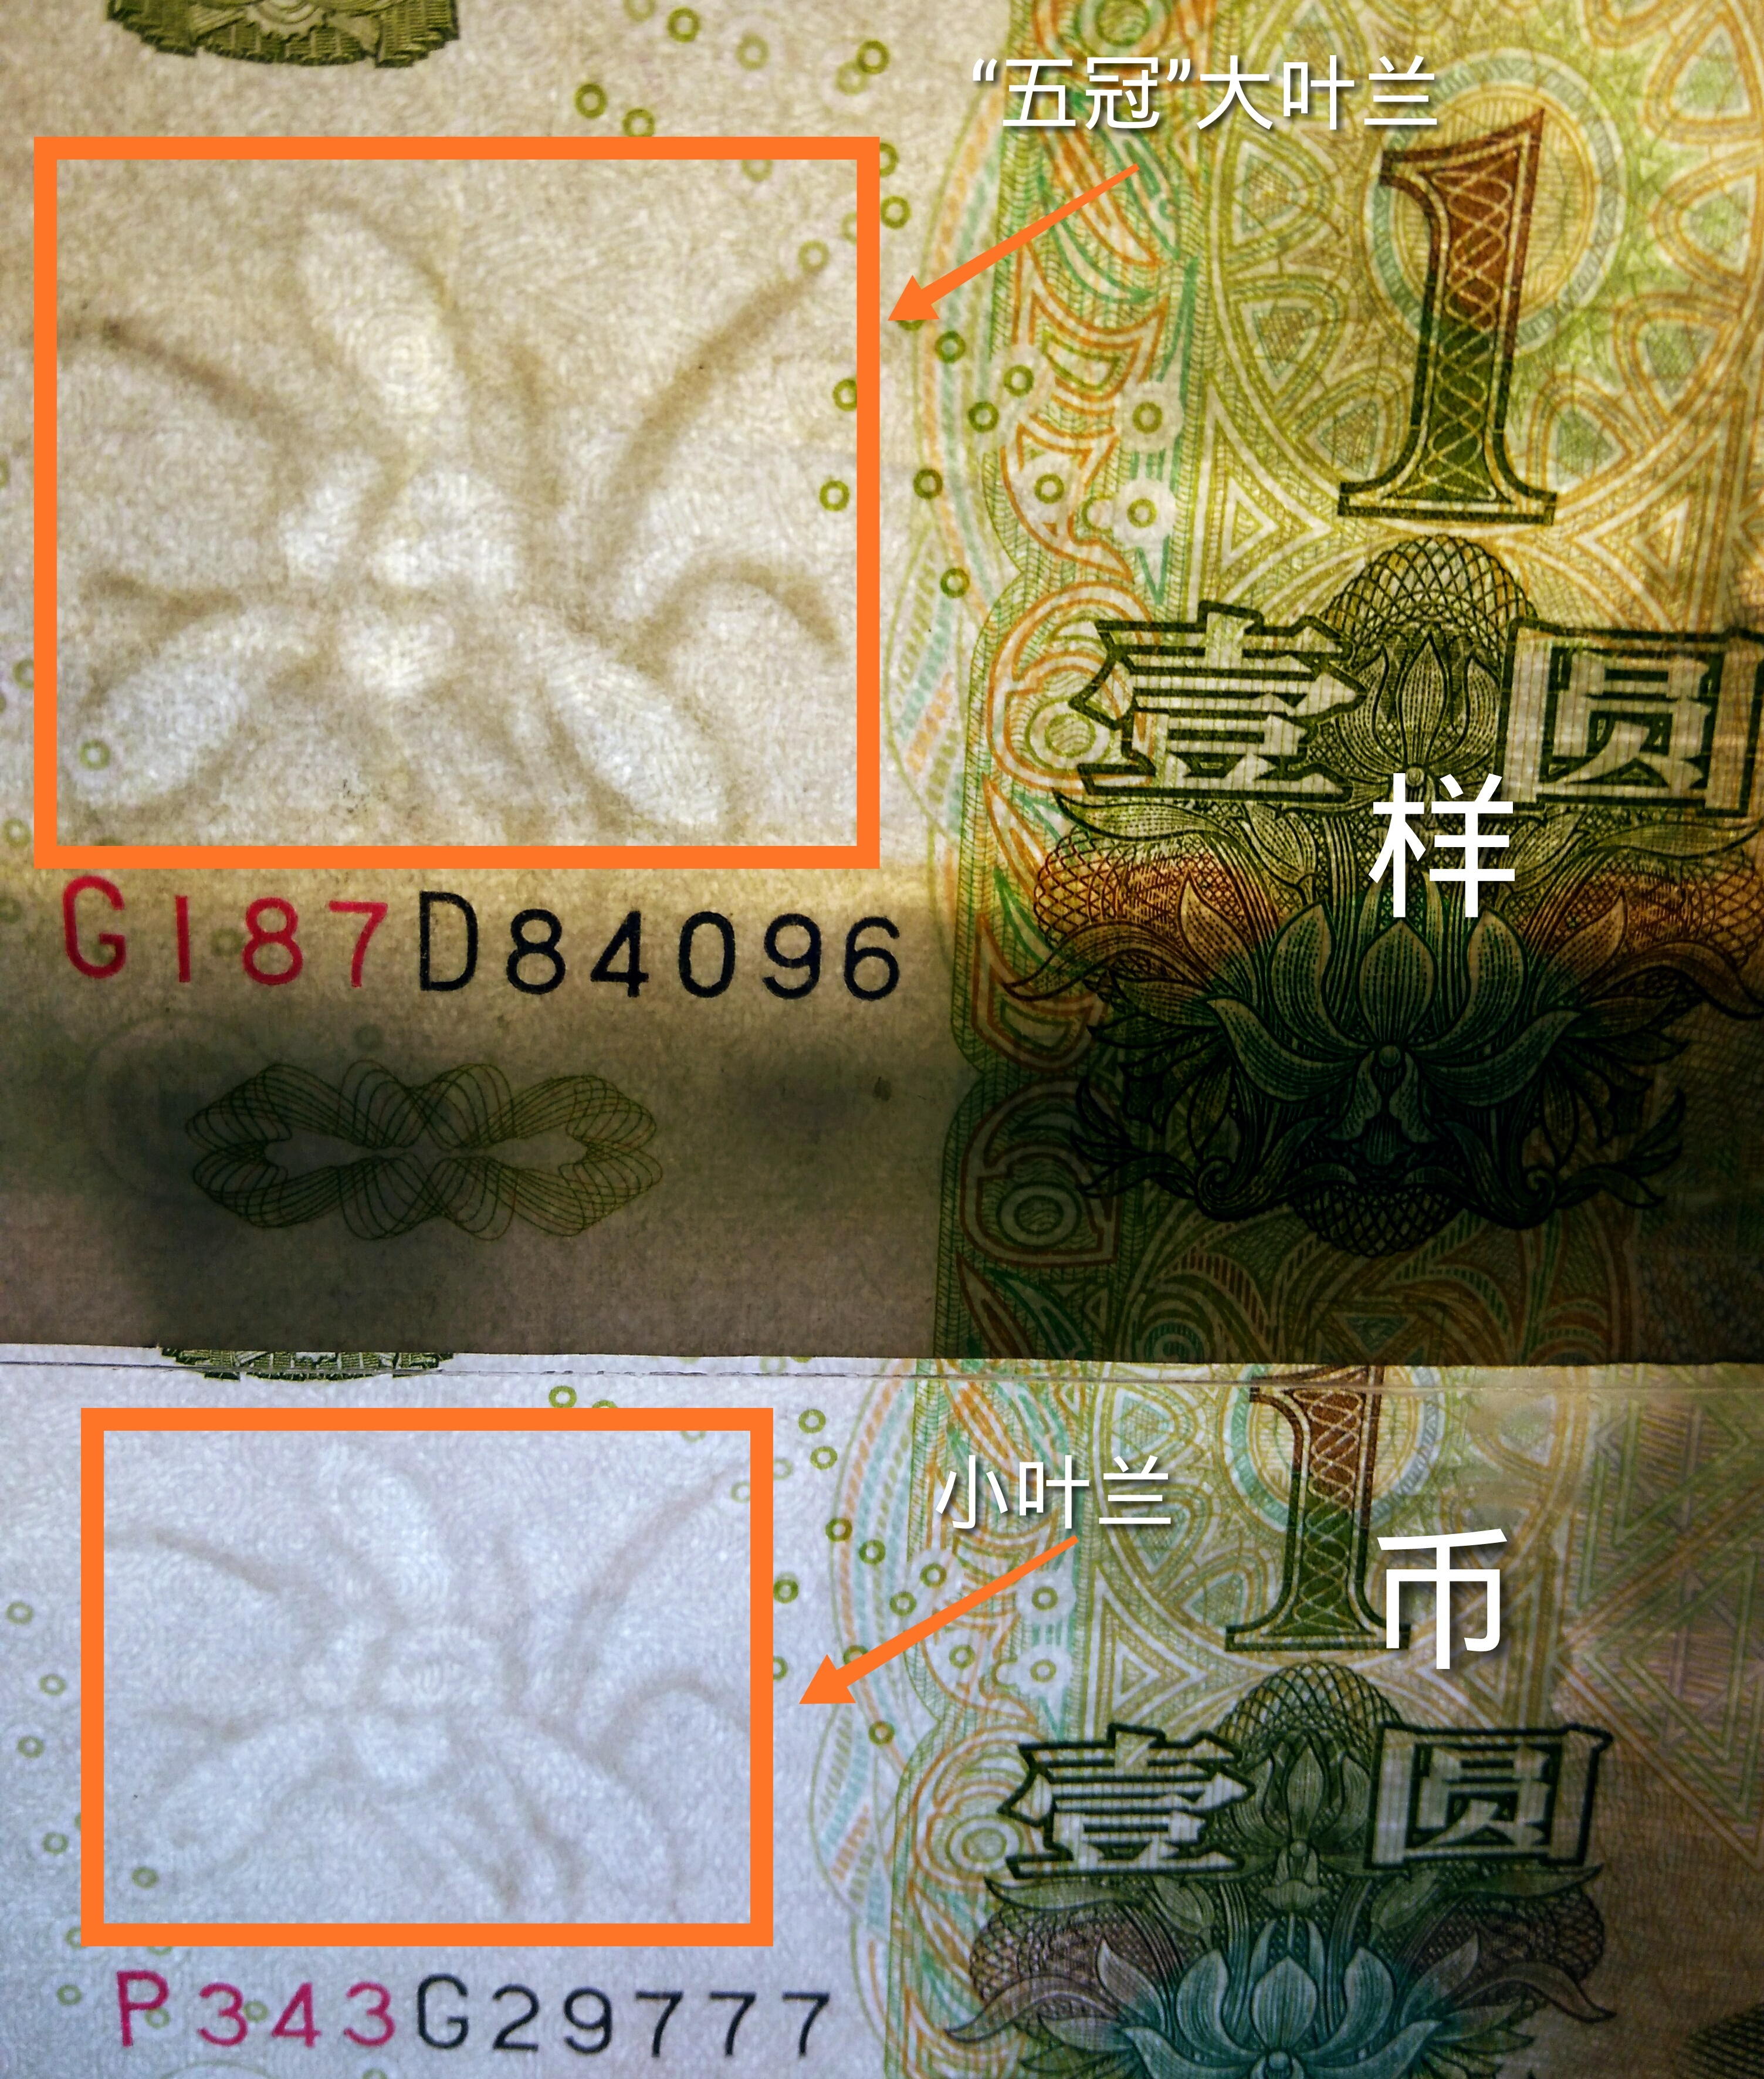 "新币王:人民币(1999版)1元券之"超级大叶兰"诞生记